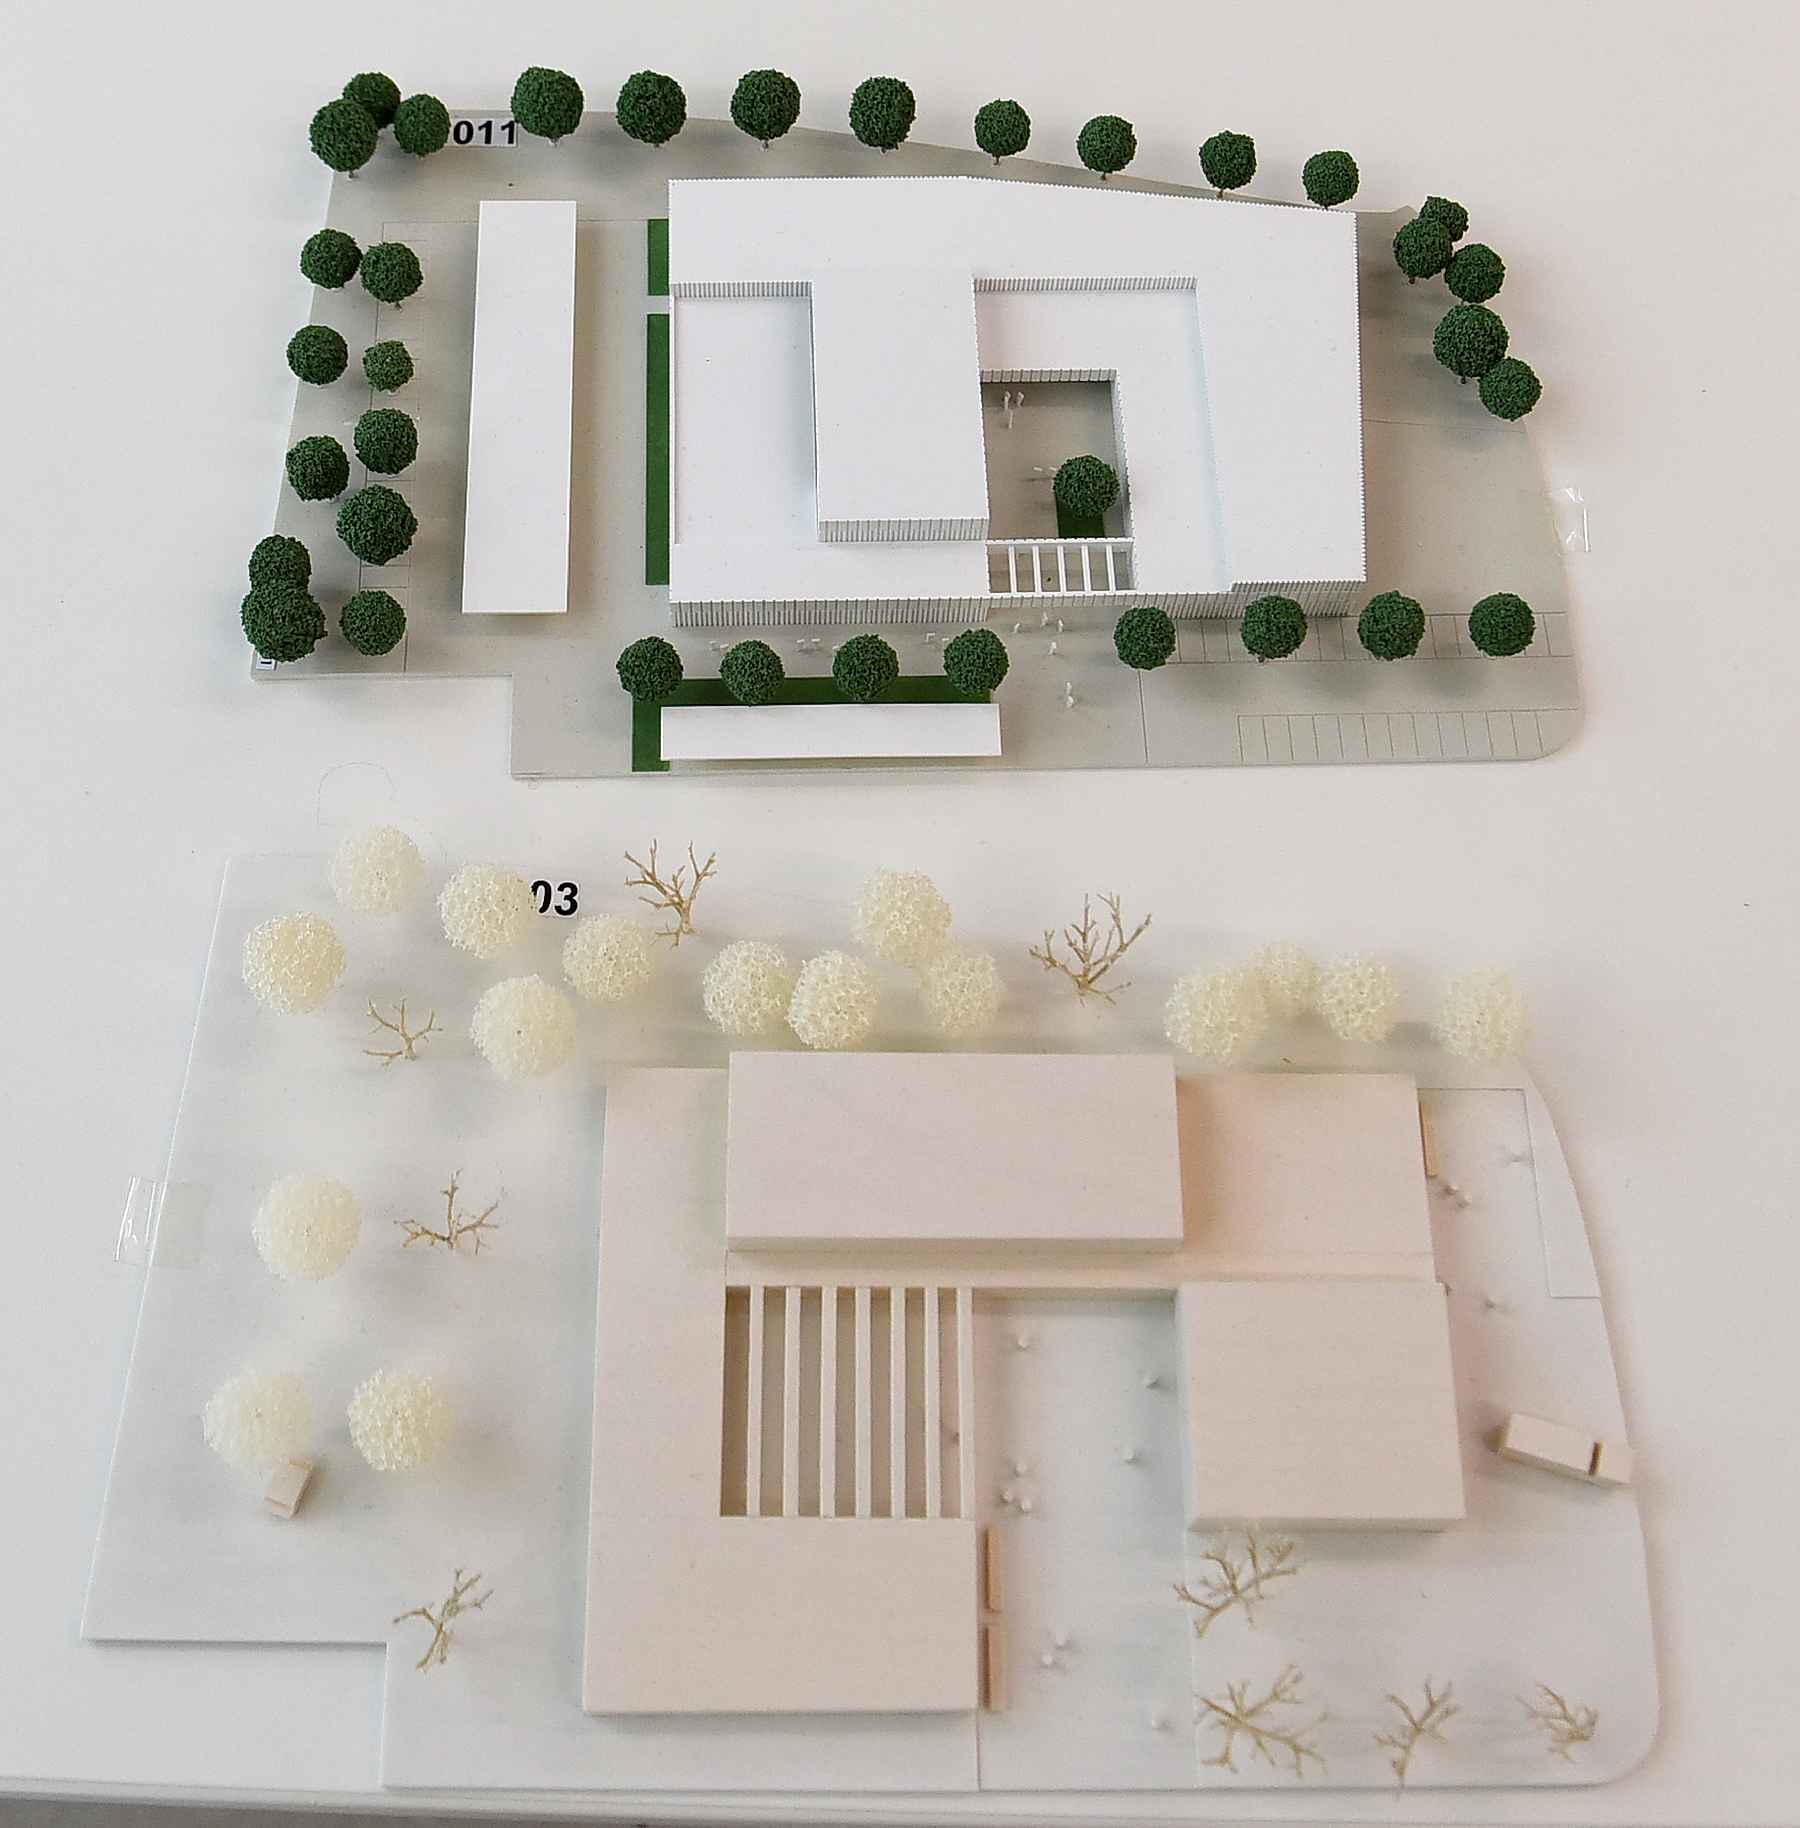 Modell einer Kulturhalle